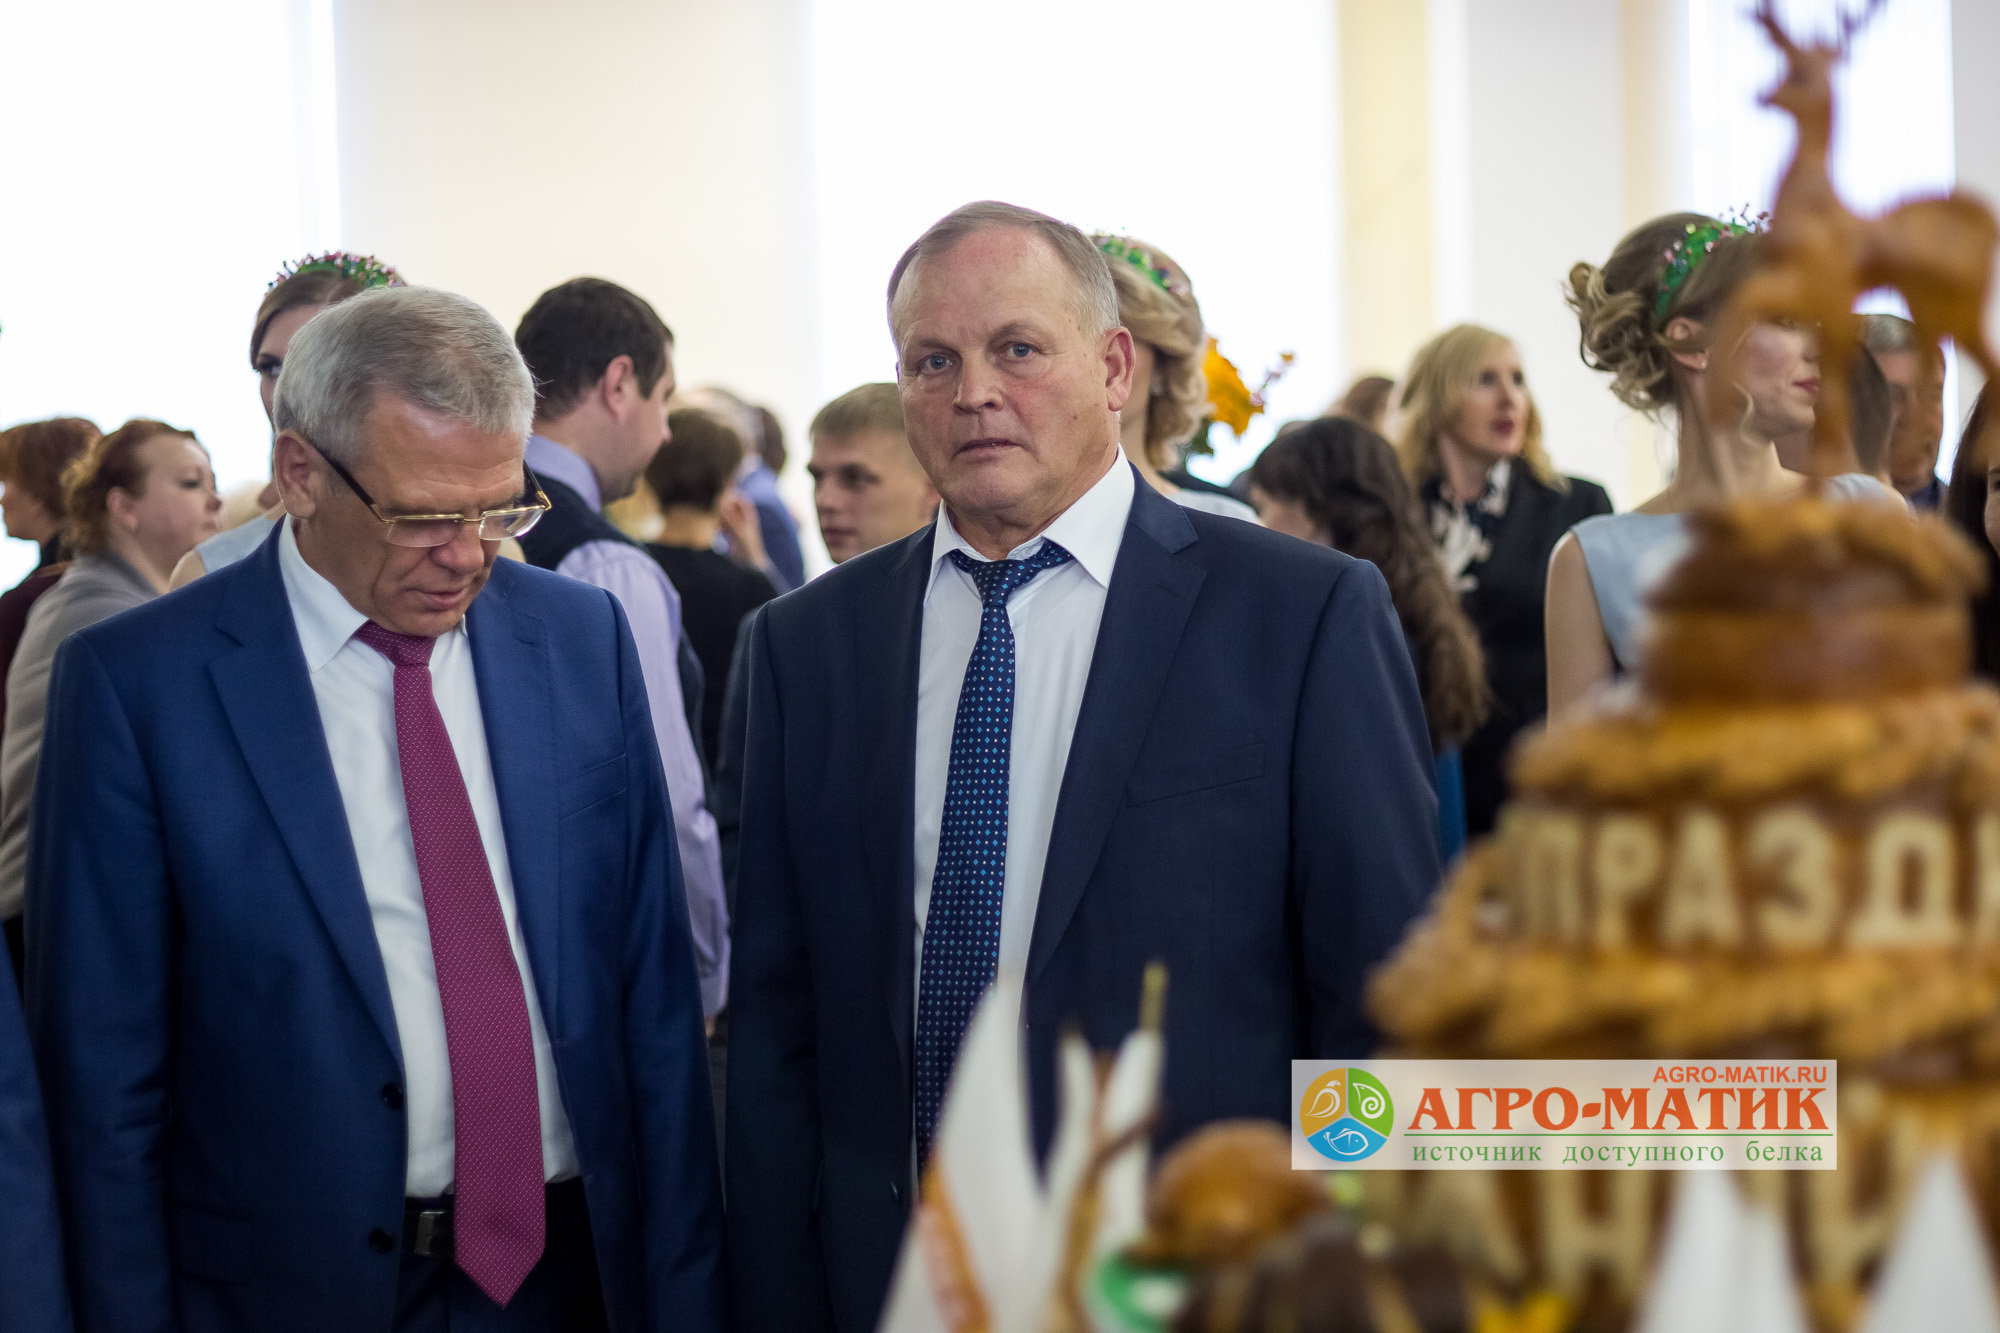 «Агро-Матик» приняла участие в торжествах в Нижегородском кремле  / Агро-Матик #2